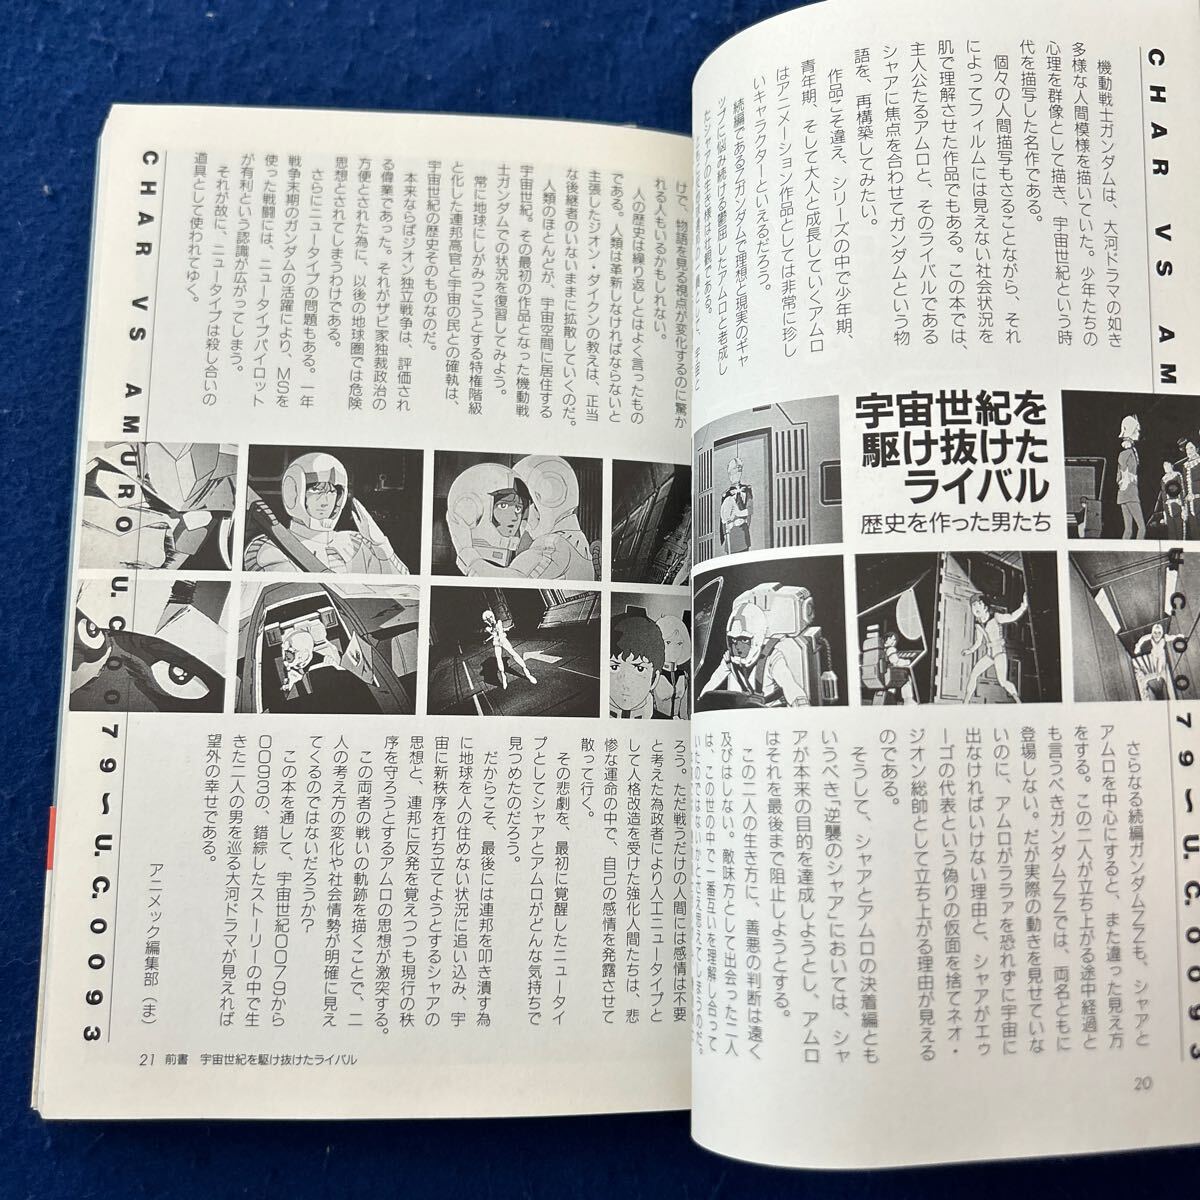  Mobile Suit Gundam * car avsamro* anime k special editing * telecast 20 anniversary commemoration plan * work guide * novel 